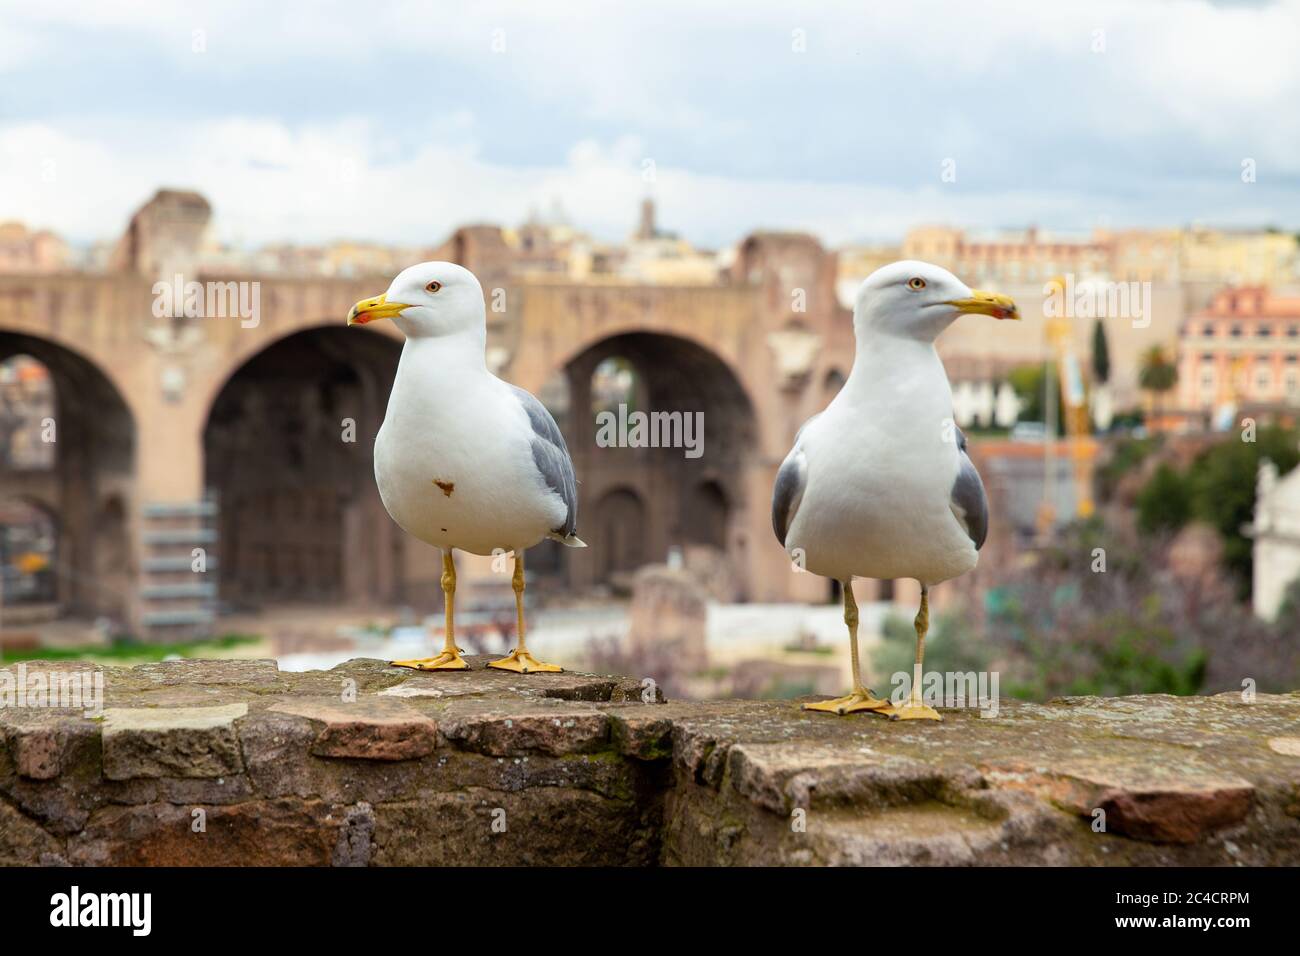 Nahaufnahme von zwei Möwen, die in entgegengesetzte Richtungen schauen, die römische Forumruine im Hintergrund, Rom, Italien Stockfoto